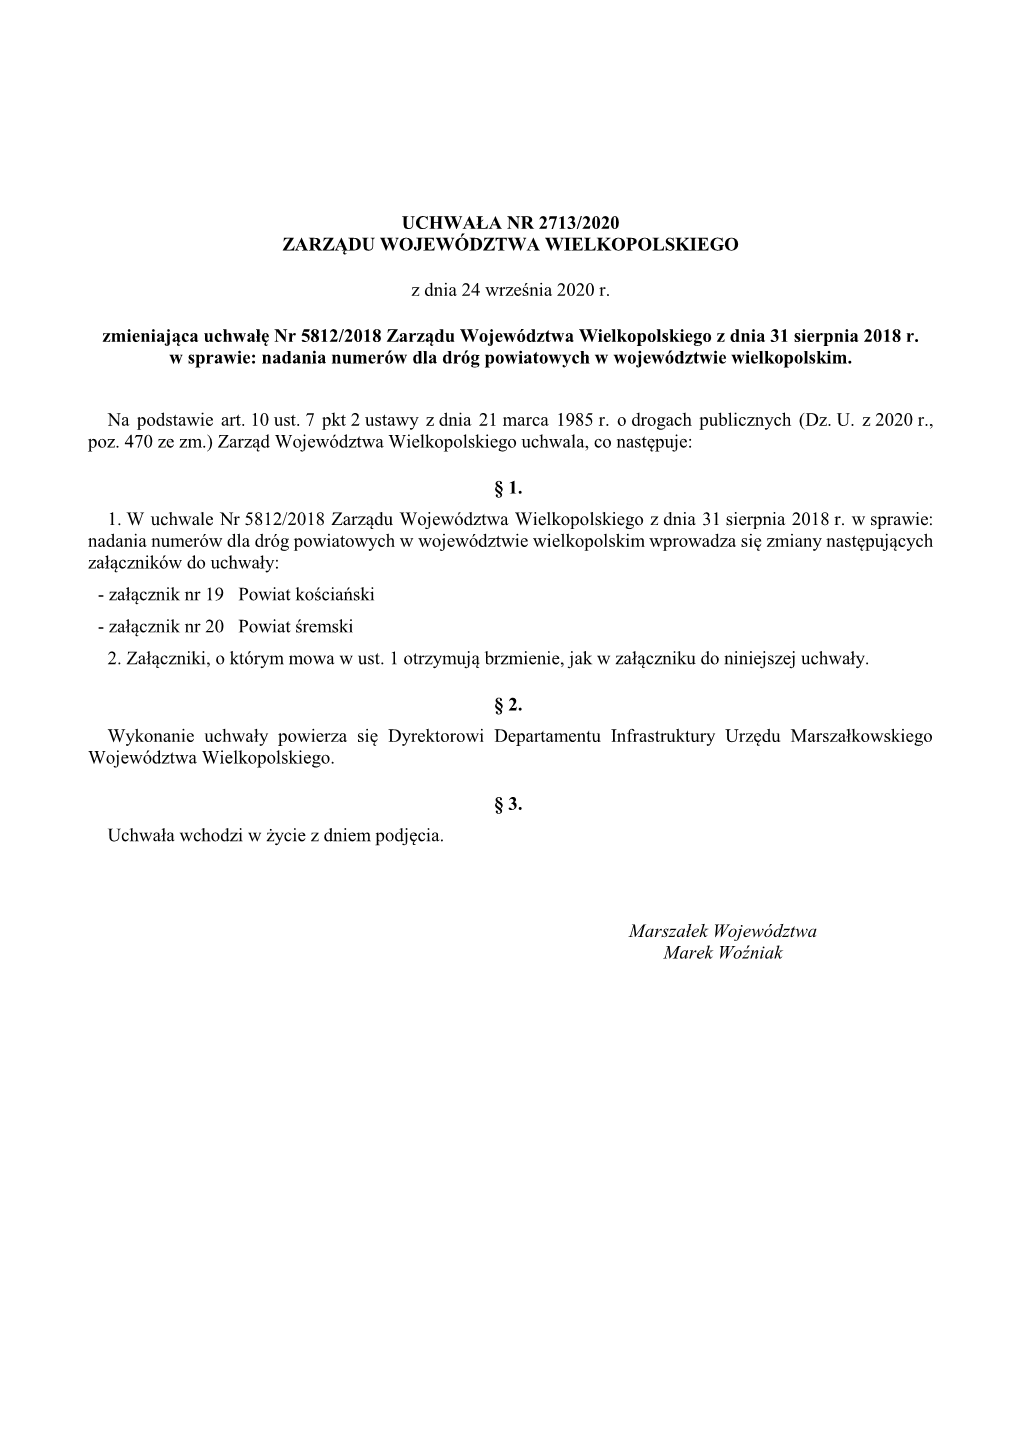 Uchwała Nr 2713/2020 Zarządu Województwa Wielkopolskiego